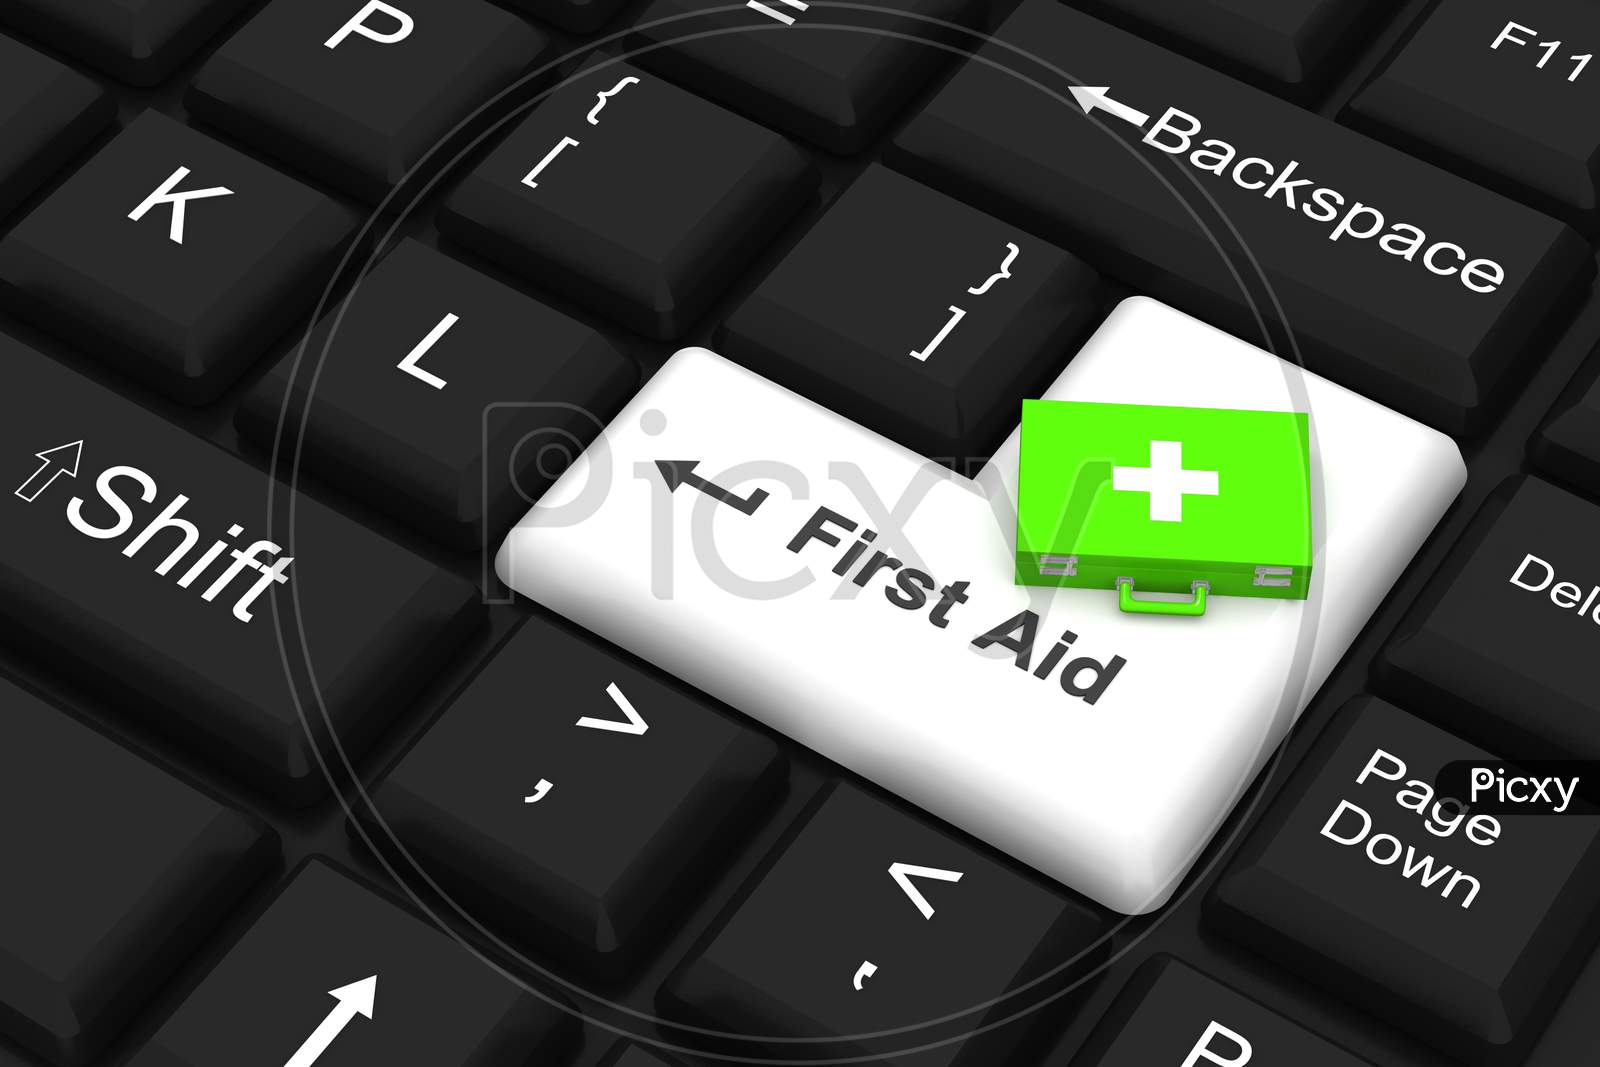 First Aid Key